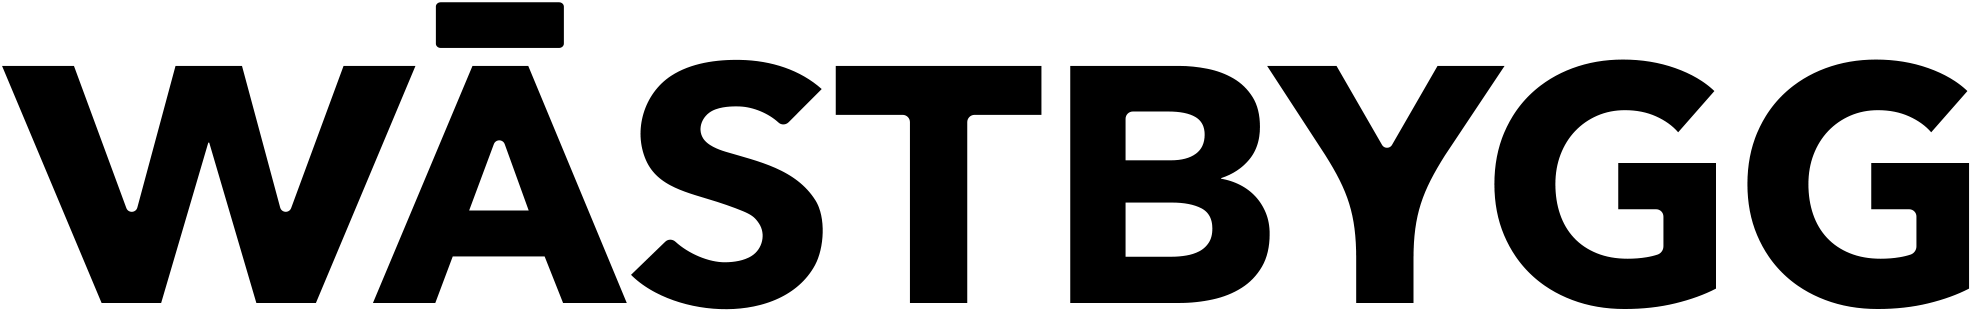 Wästbygg Logo